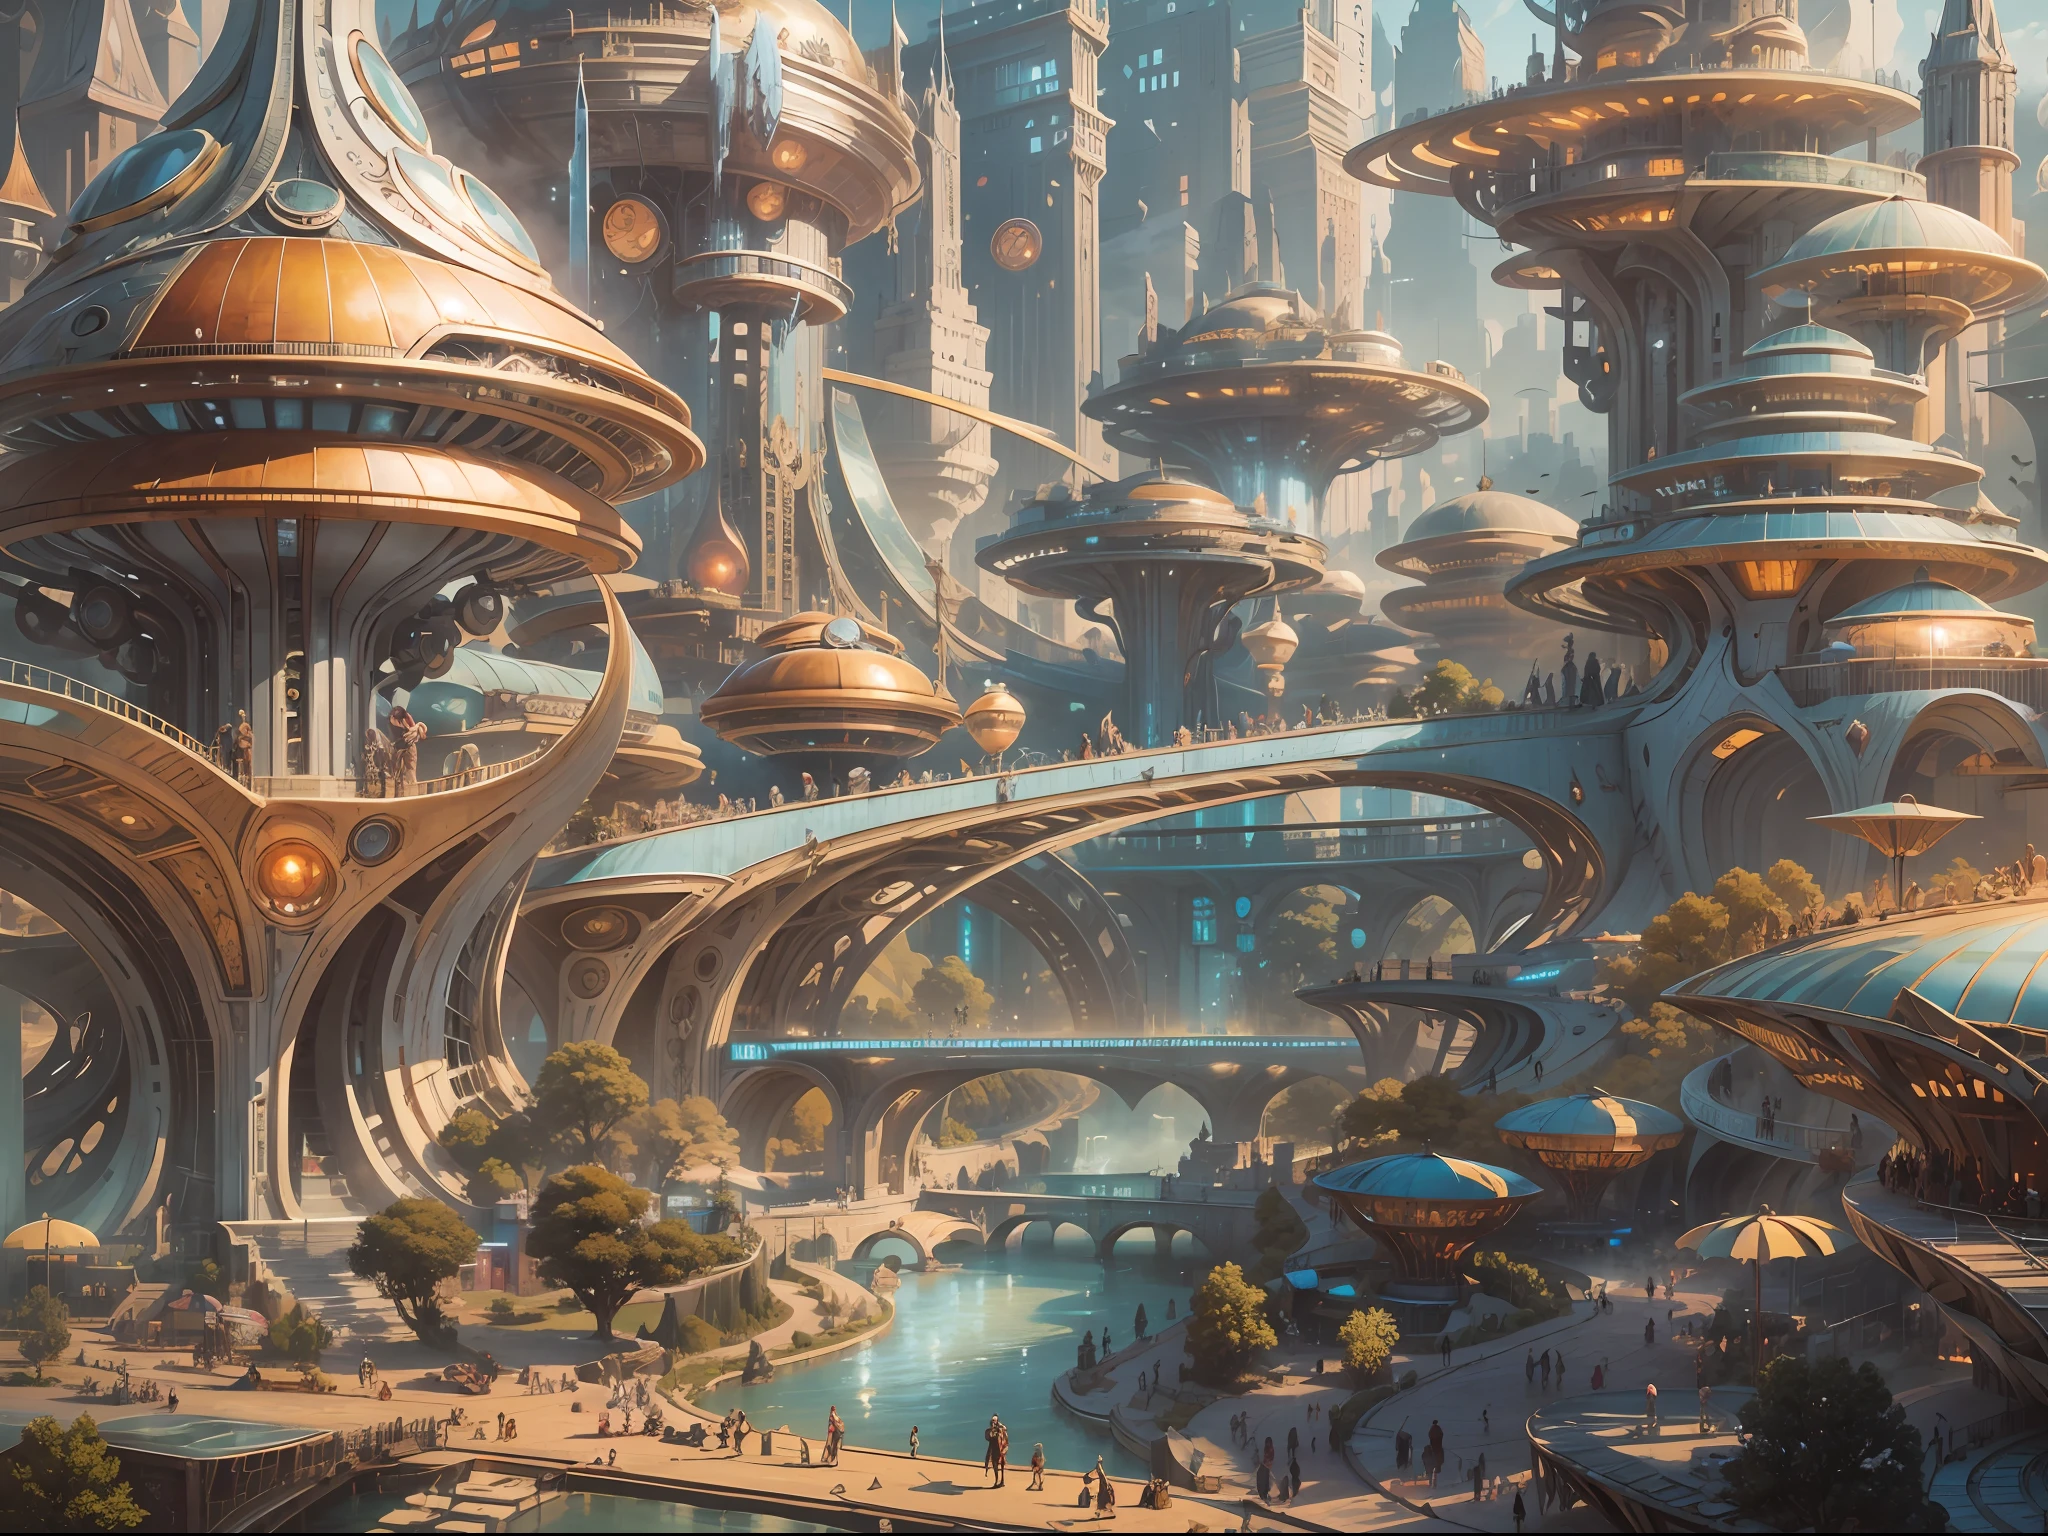 被称为“明日世界”的未来主义城市景观, 拥有令人印象深刻的精美设计建筑，银矿丰富 , 黄金和青铜, 以及在街上漫步的机器人.